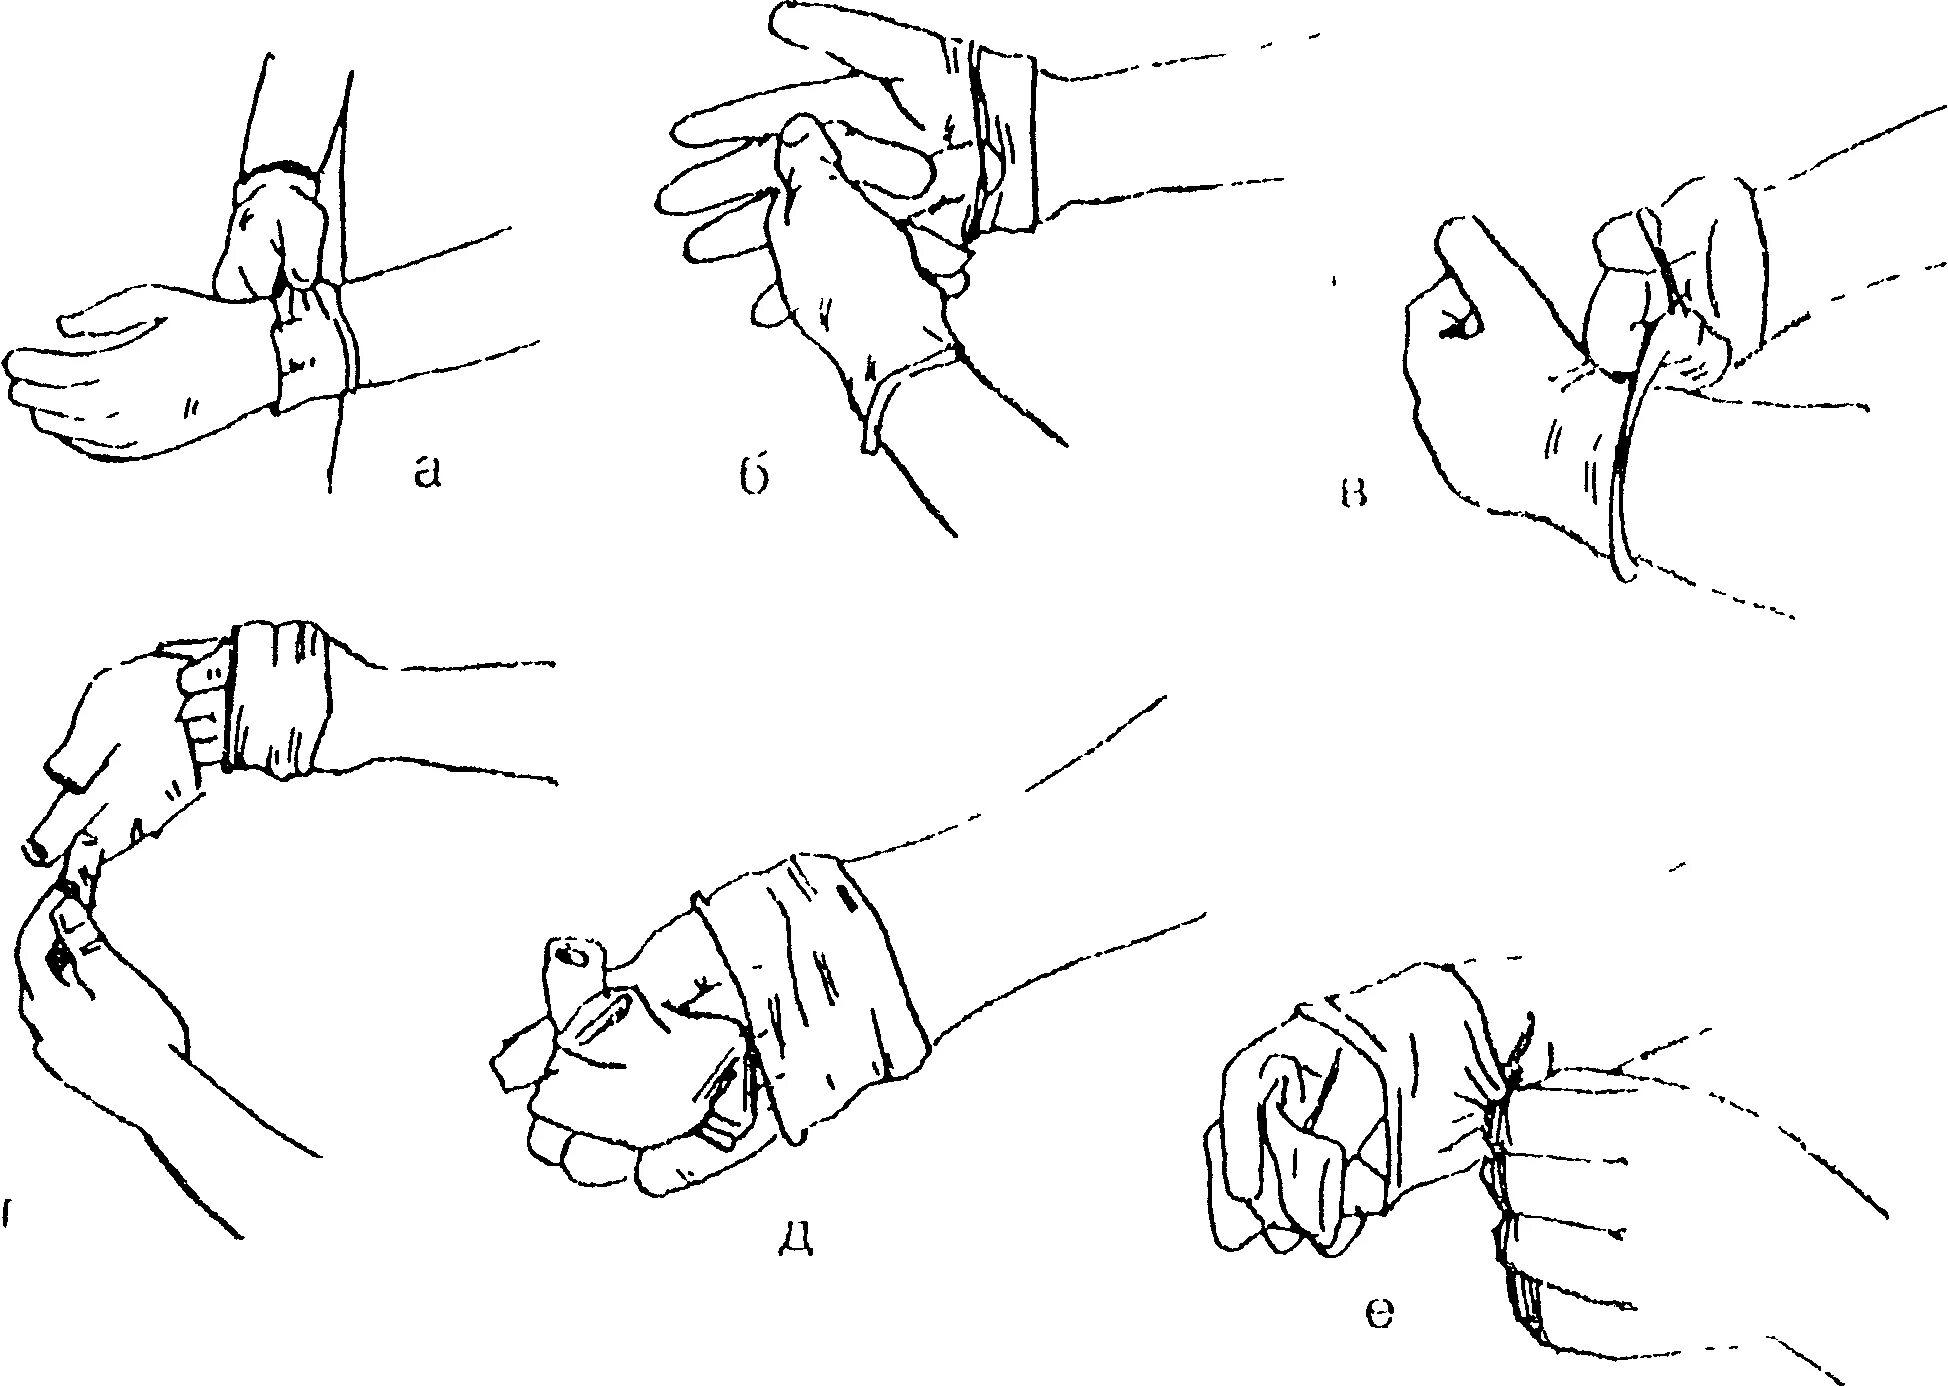 Перчатка алгоритм. Схема надевания стерильных перчаток. Одевание стерильных перчаток алгоритм. Снятие стерильных перчаток алгоритм. Надевание стерильных перчаток и снятие использованных перчаток.